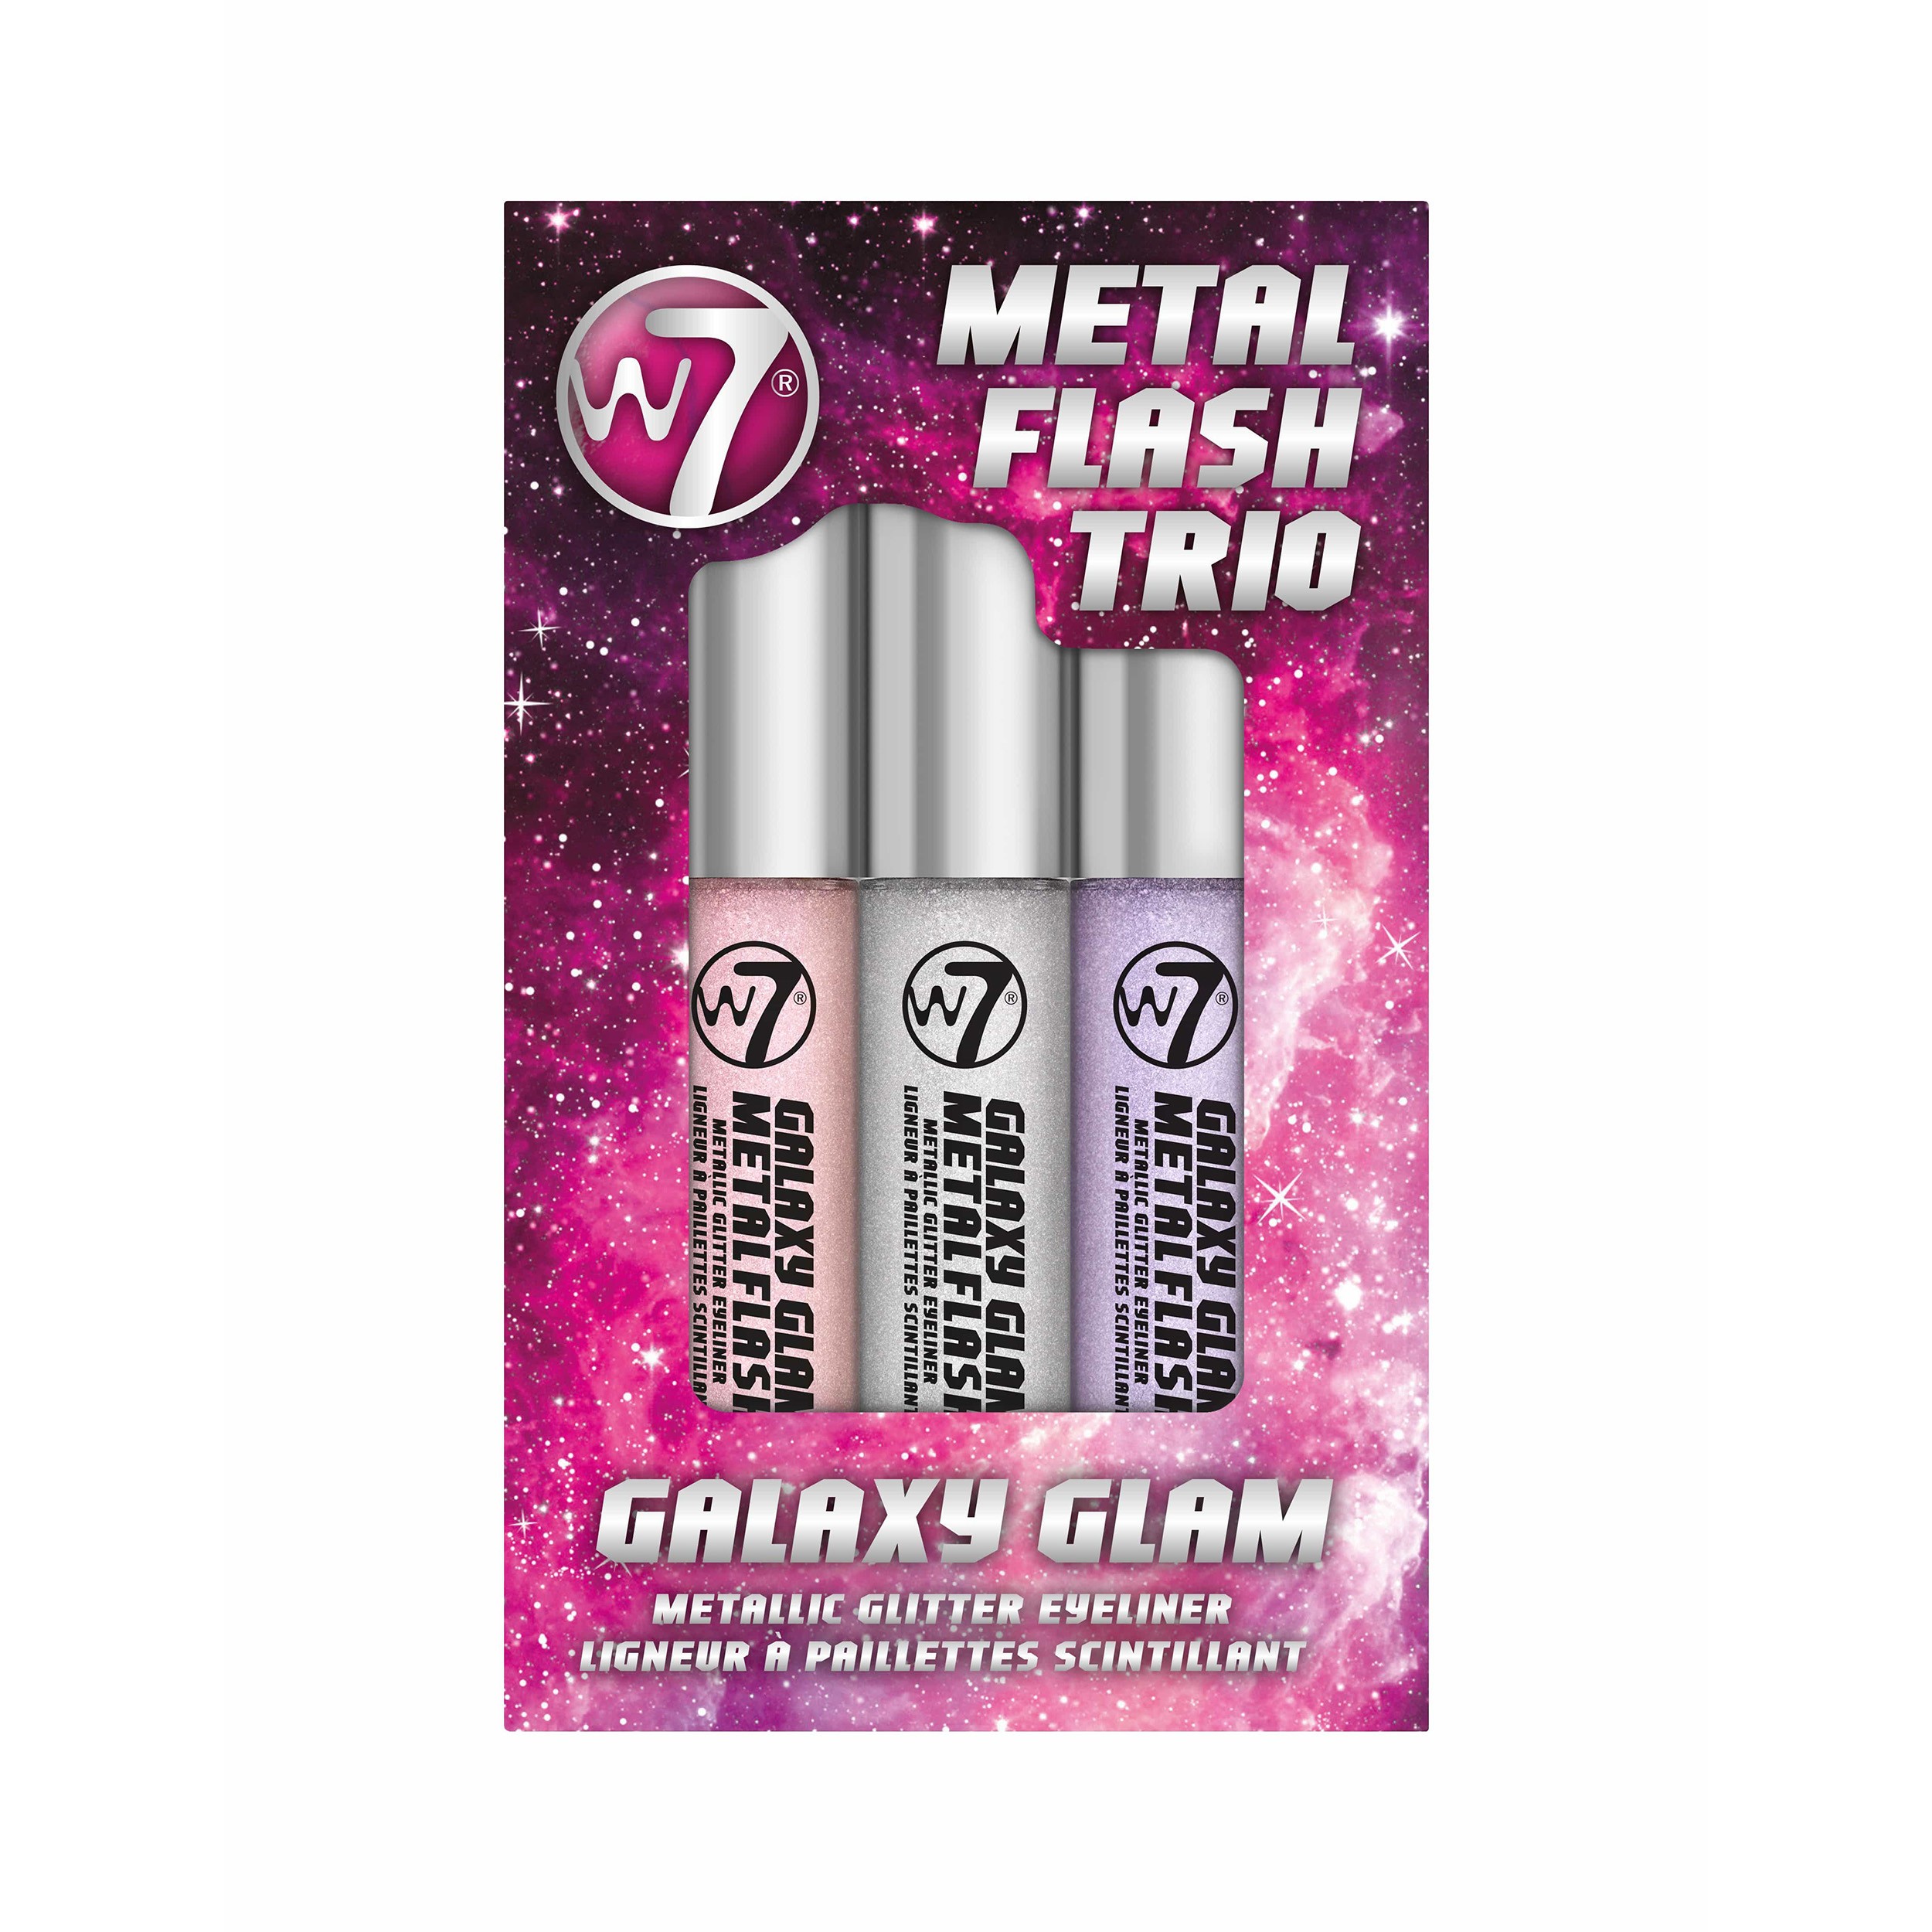 Flüssig-Eyeliner Set - Metal Flash Trio - Galaxy Glam